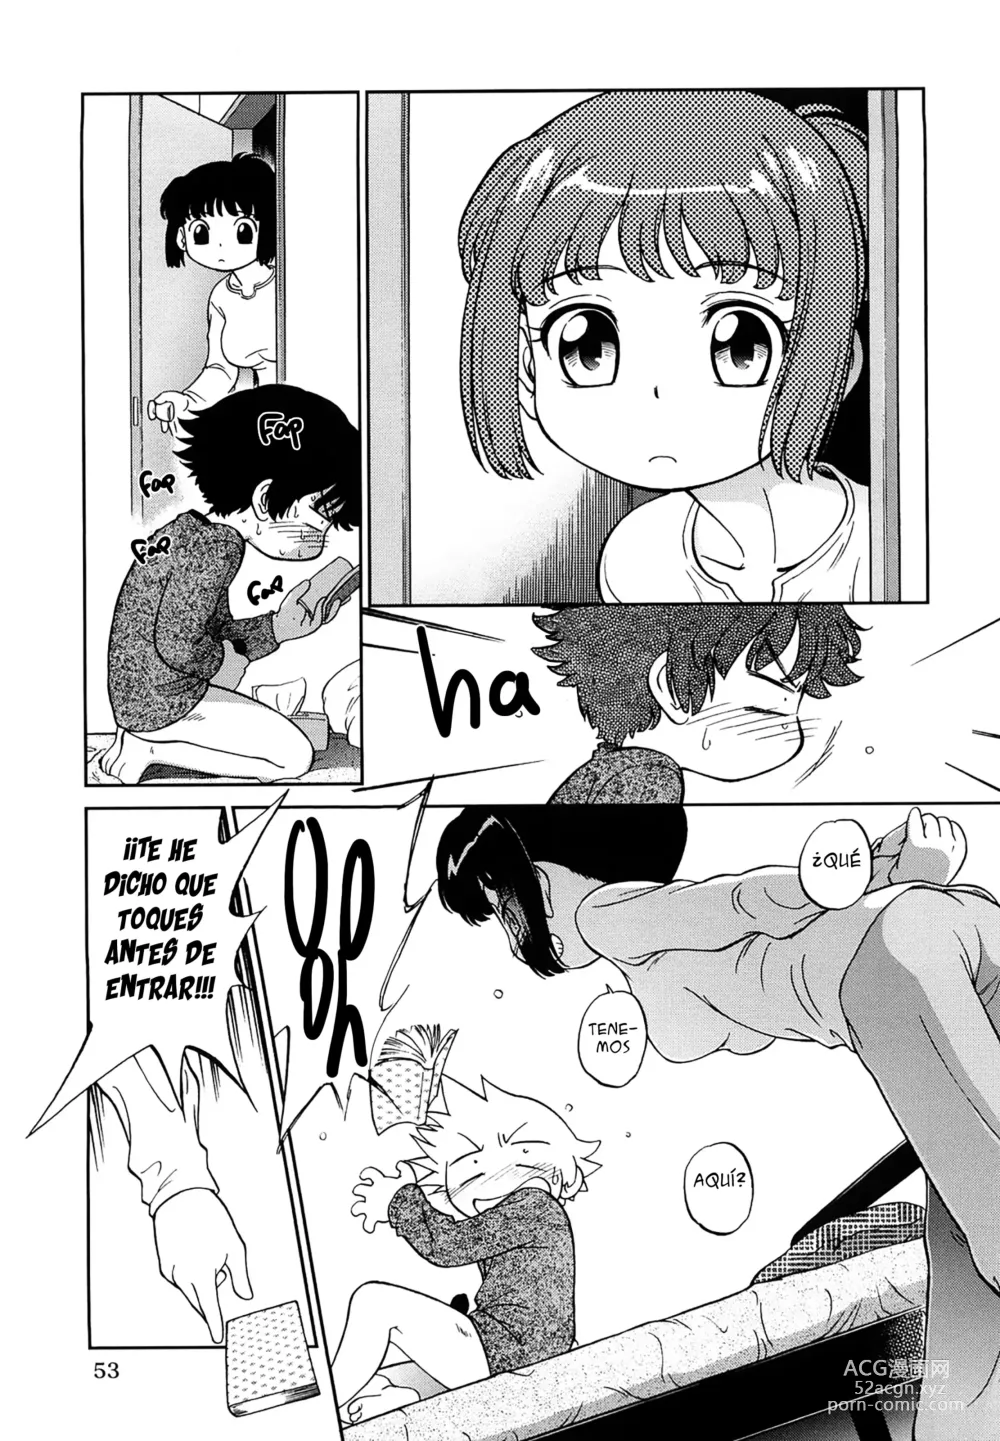 Page 9 of manga Lecciones confinadas de hermanos lascivos